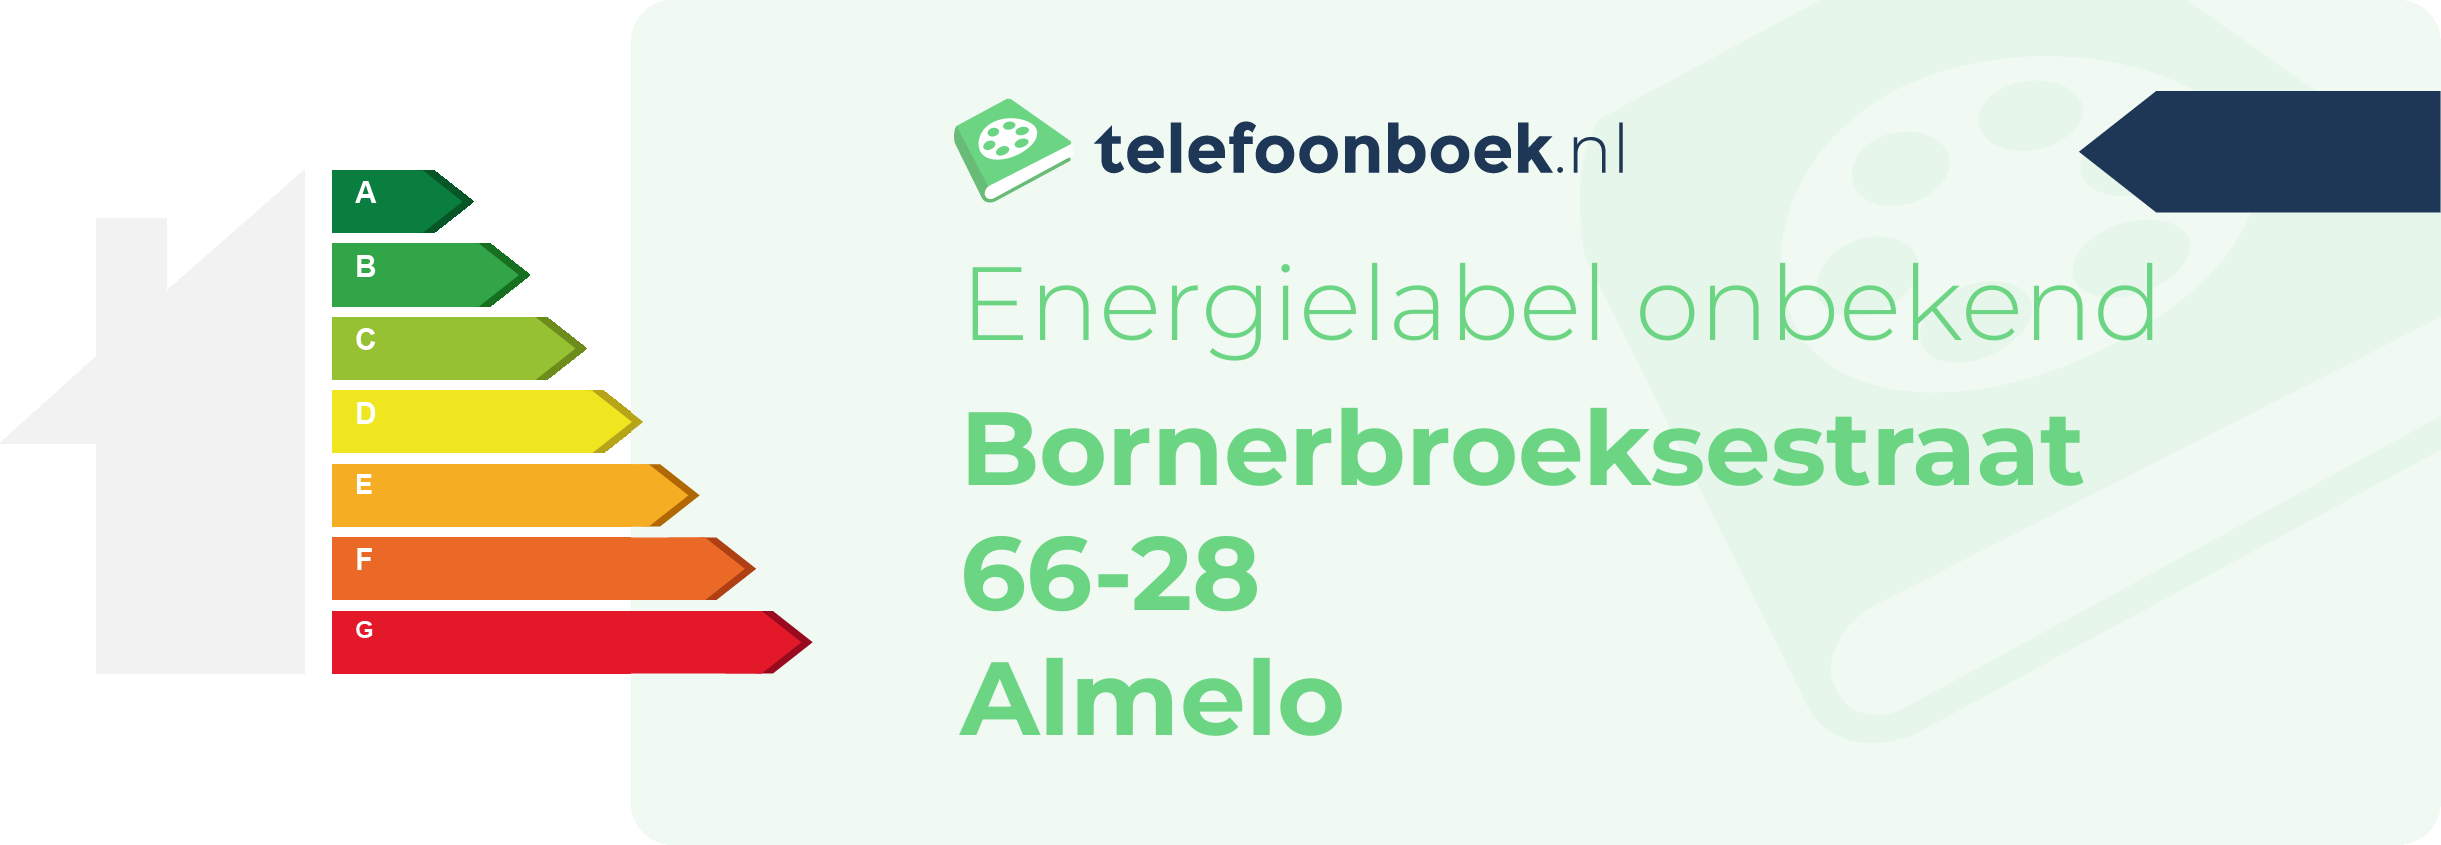 Energielabel Bornerbroeksestraat 66-28 Almelo